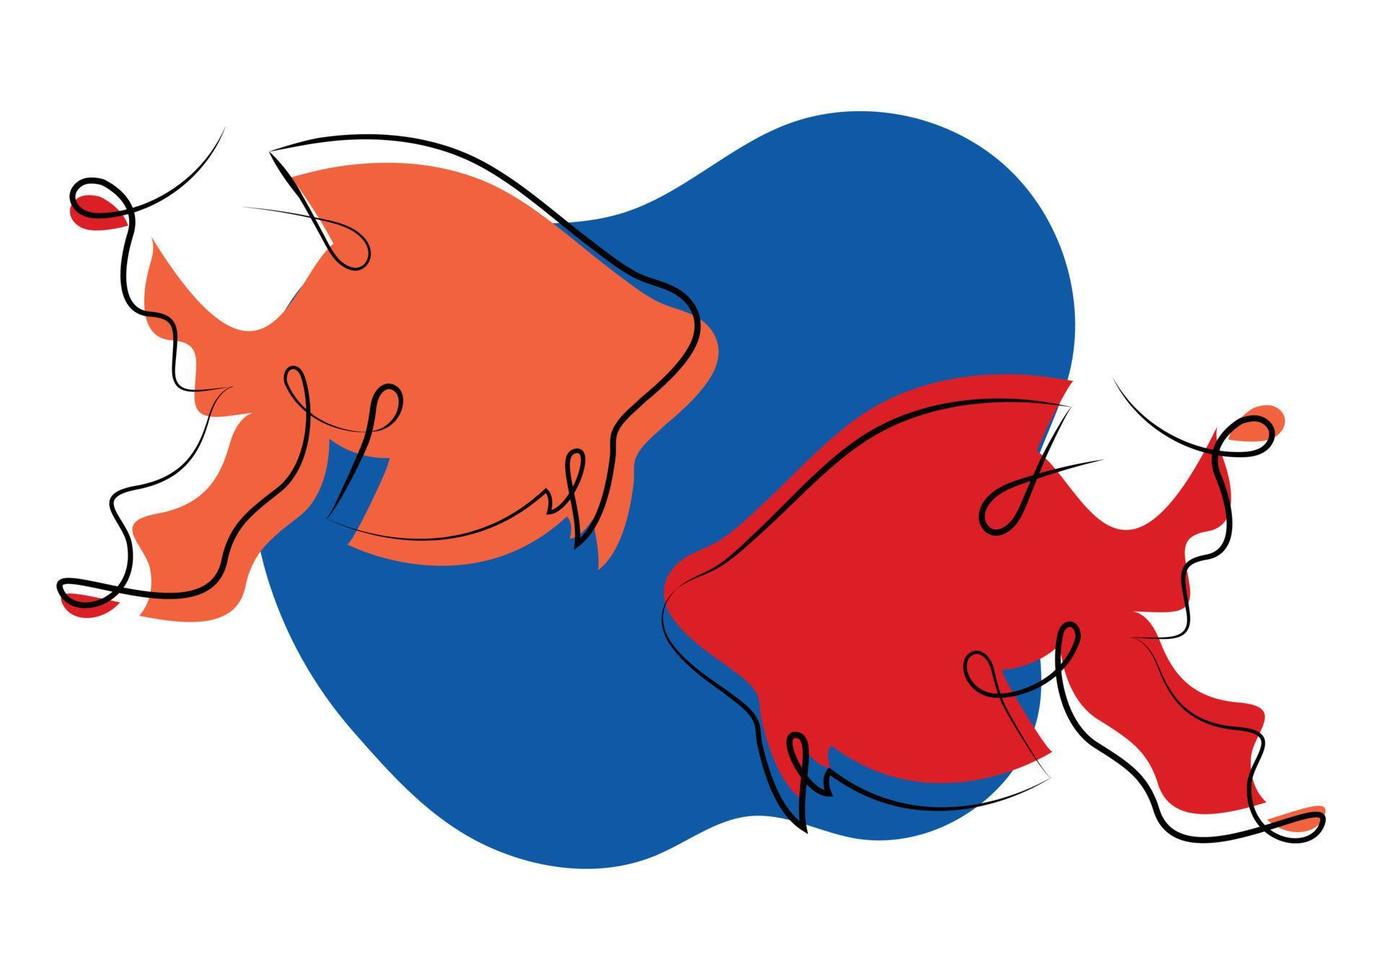 style de dessin à la main de contour minimaliste de poisson abstrait vecteur